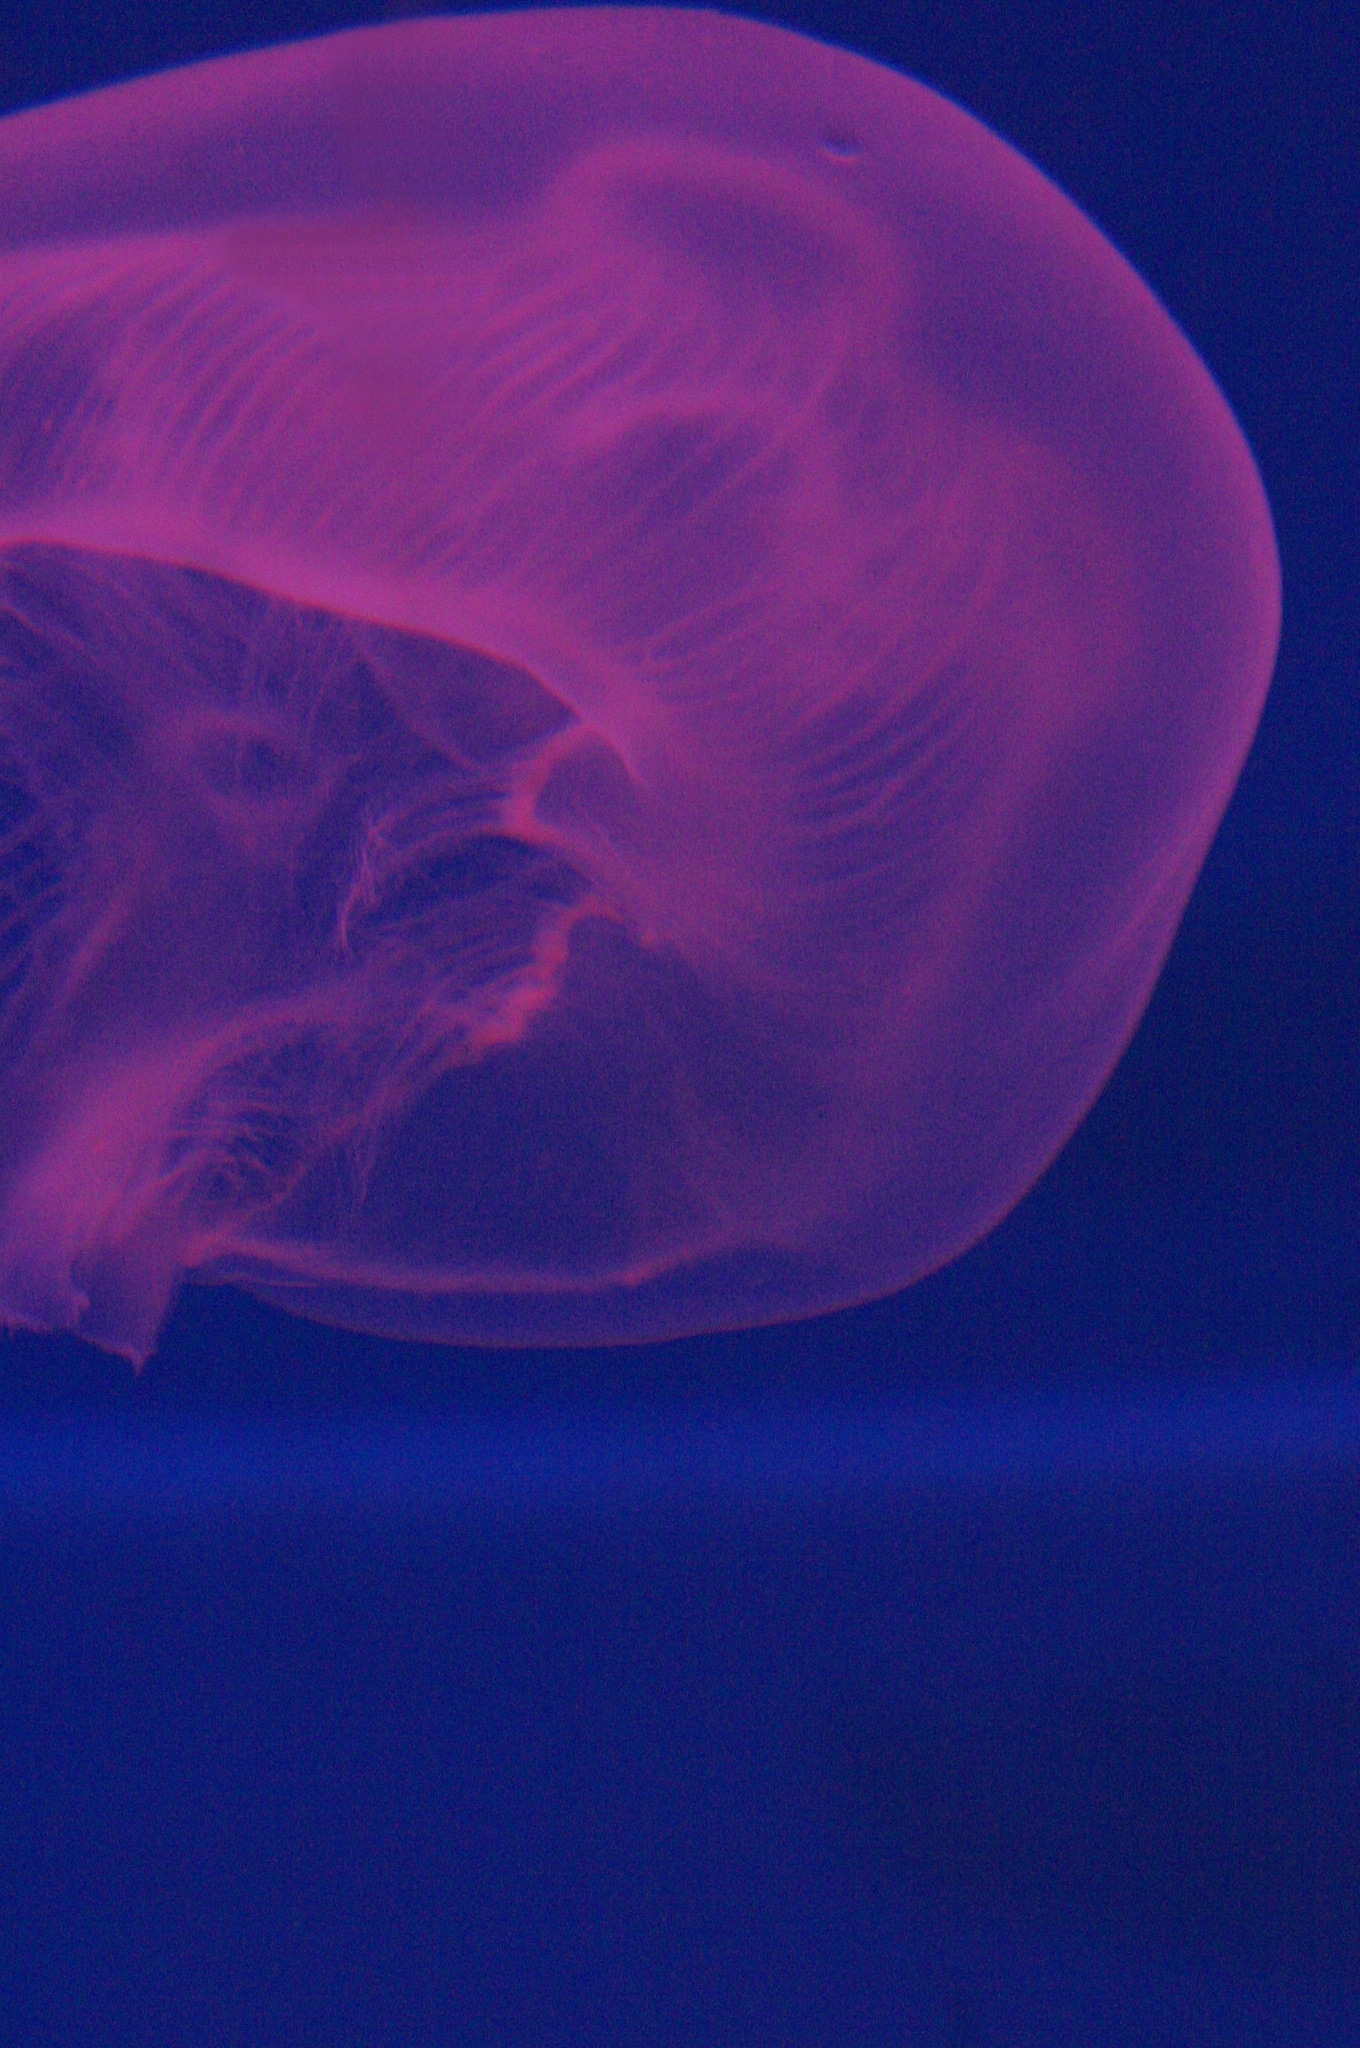 red luminous jelly fish